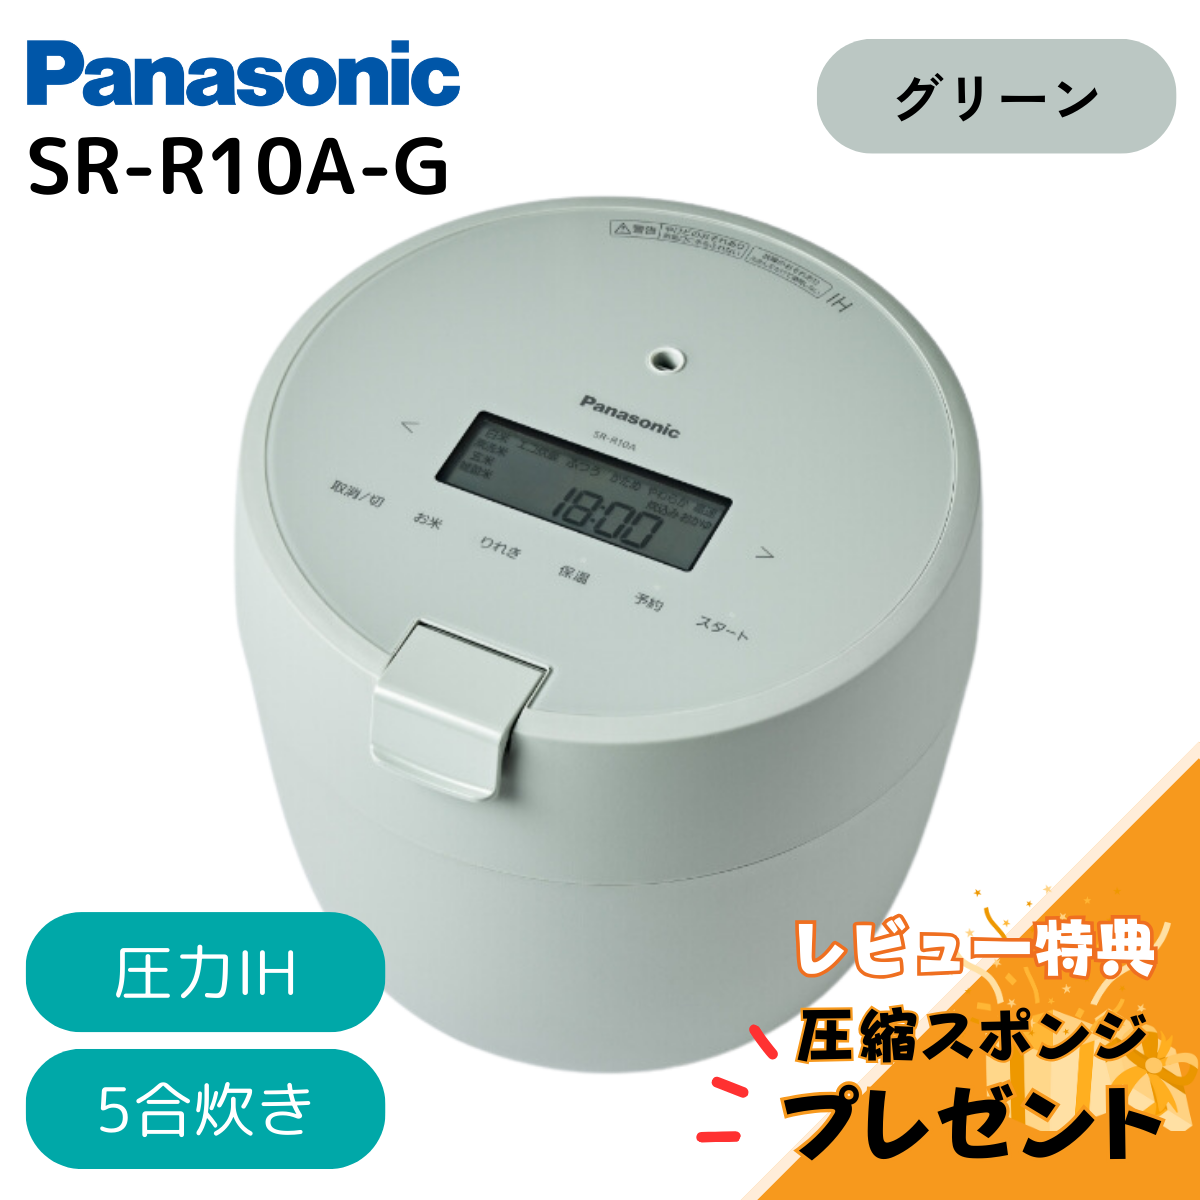 【訳あり 箱傷み】炊飯器 パナソニック ホワイト SR-R10A-W 圧力IH